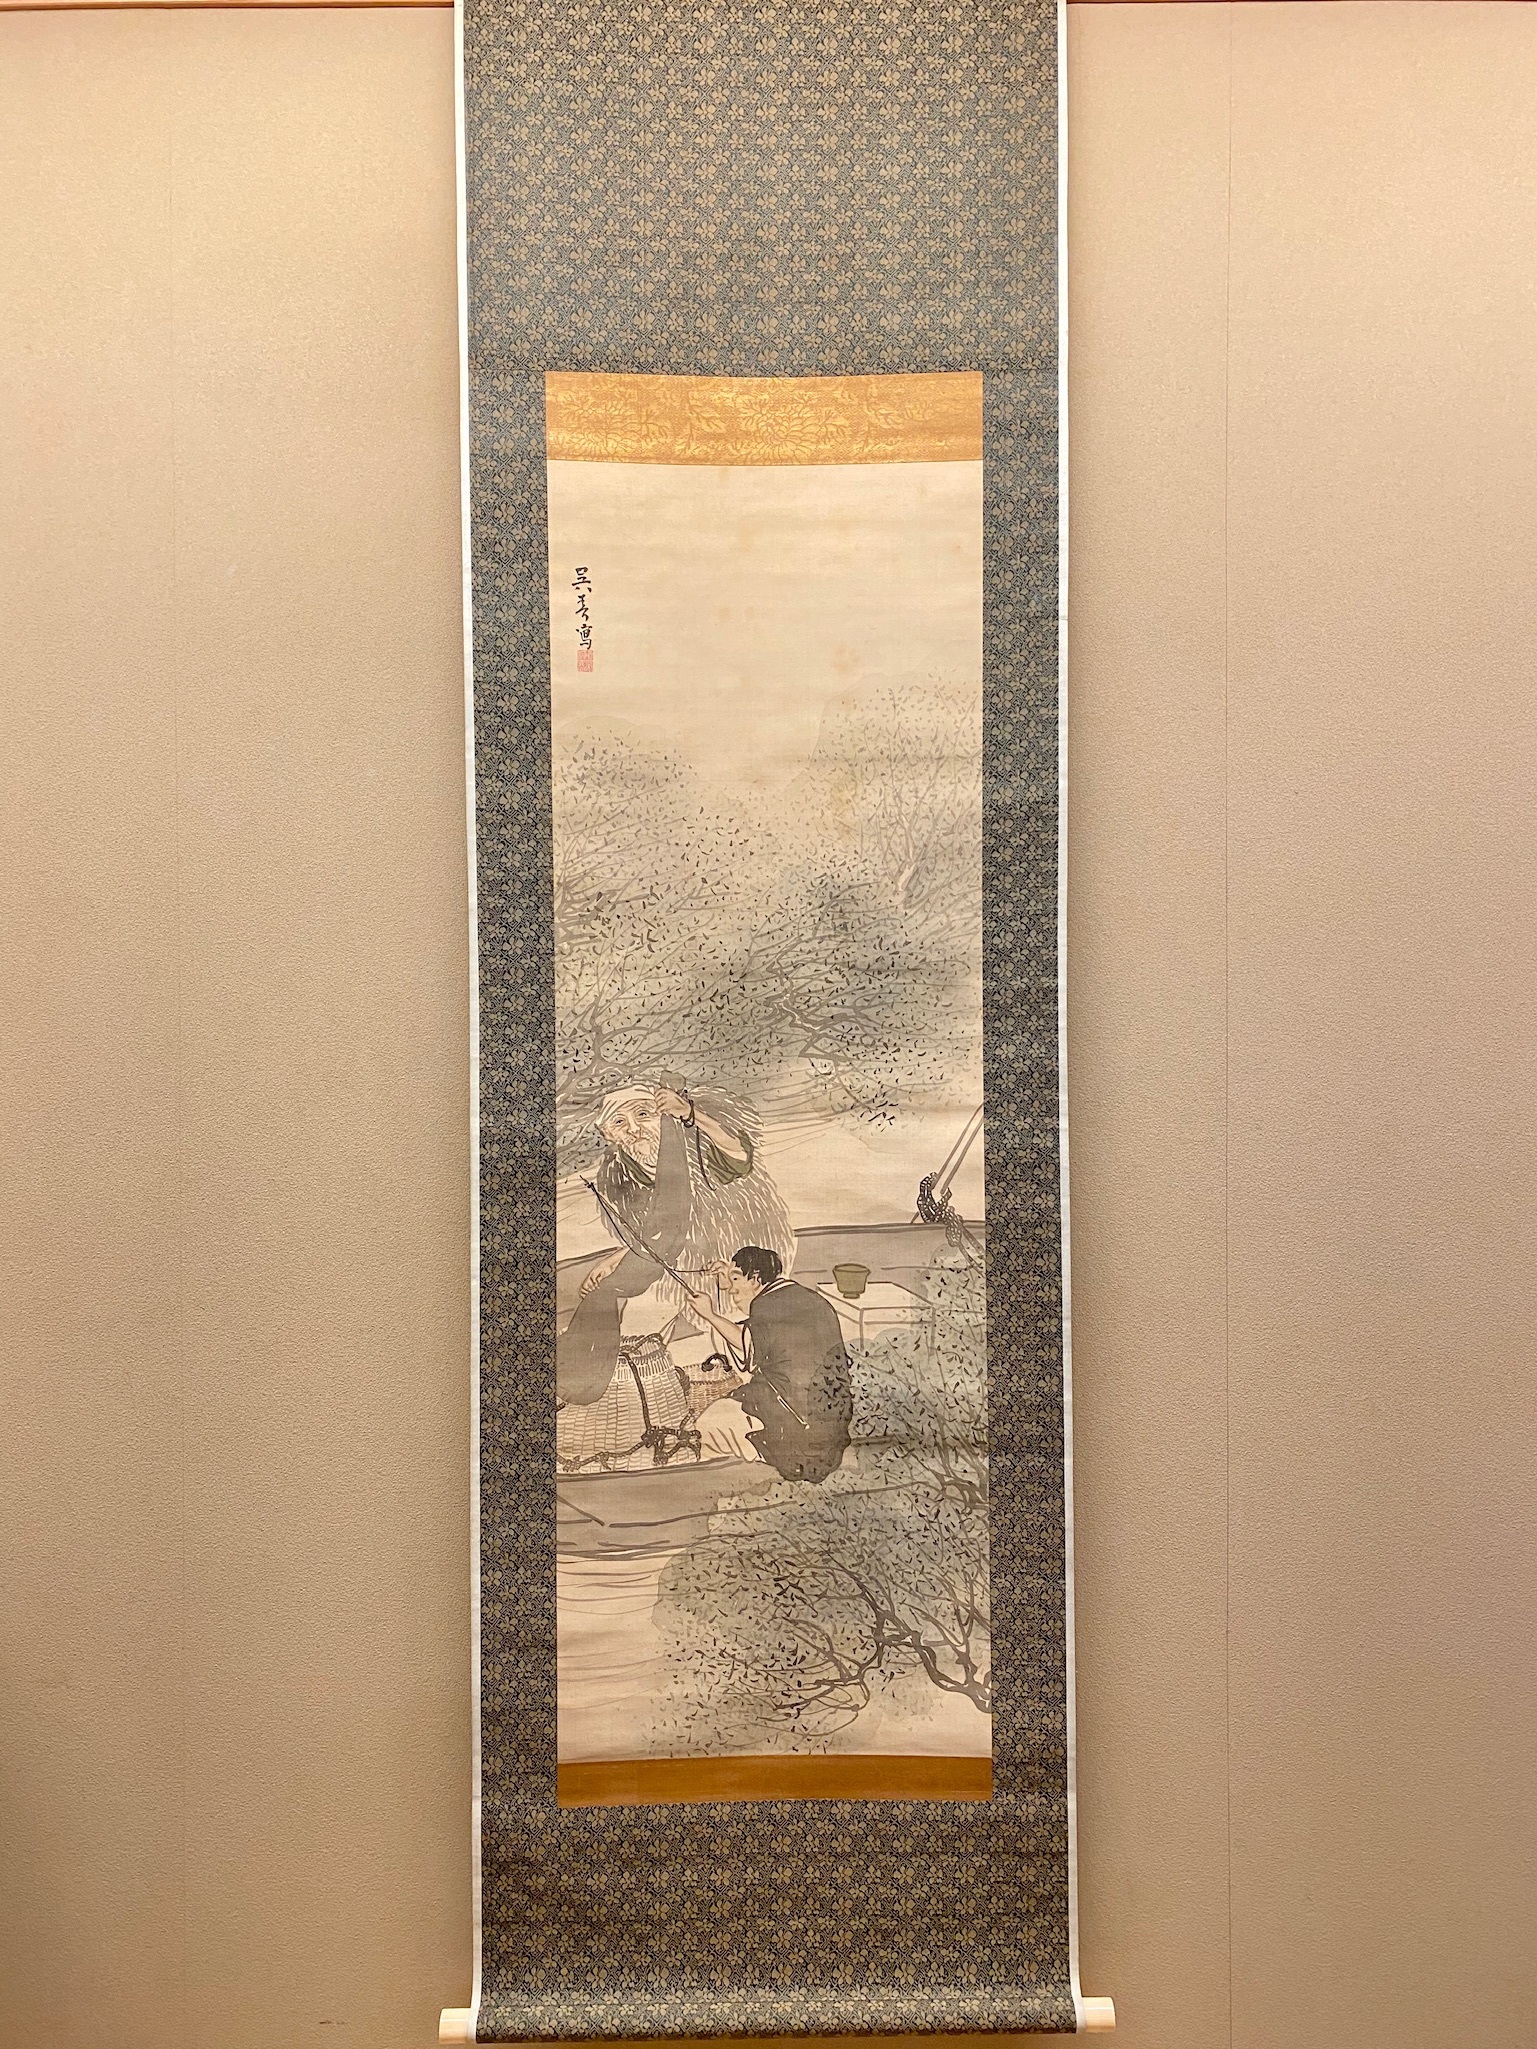 松村景文自筆『月に菊図』横物掛軸 江戸後期 - 絵画/タペストリ